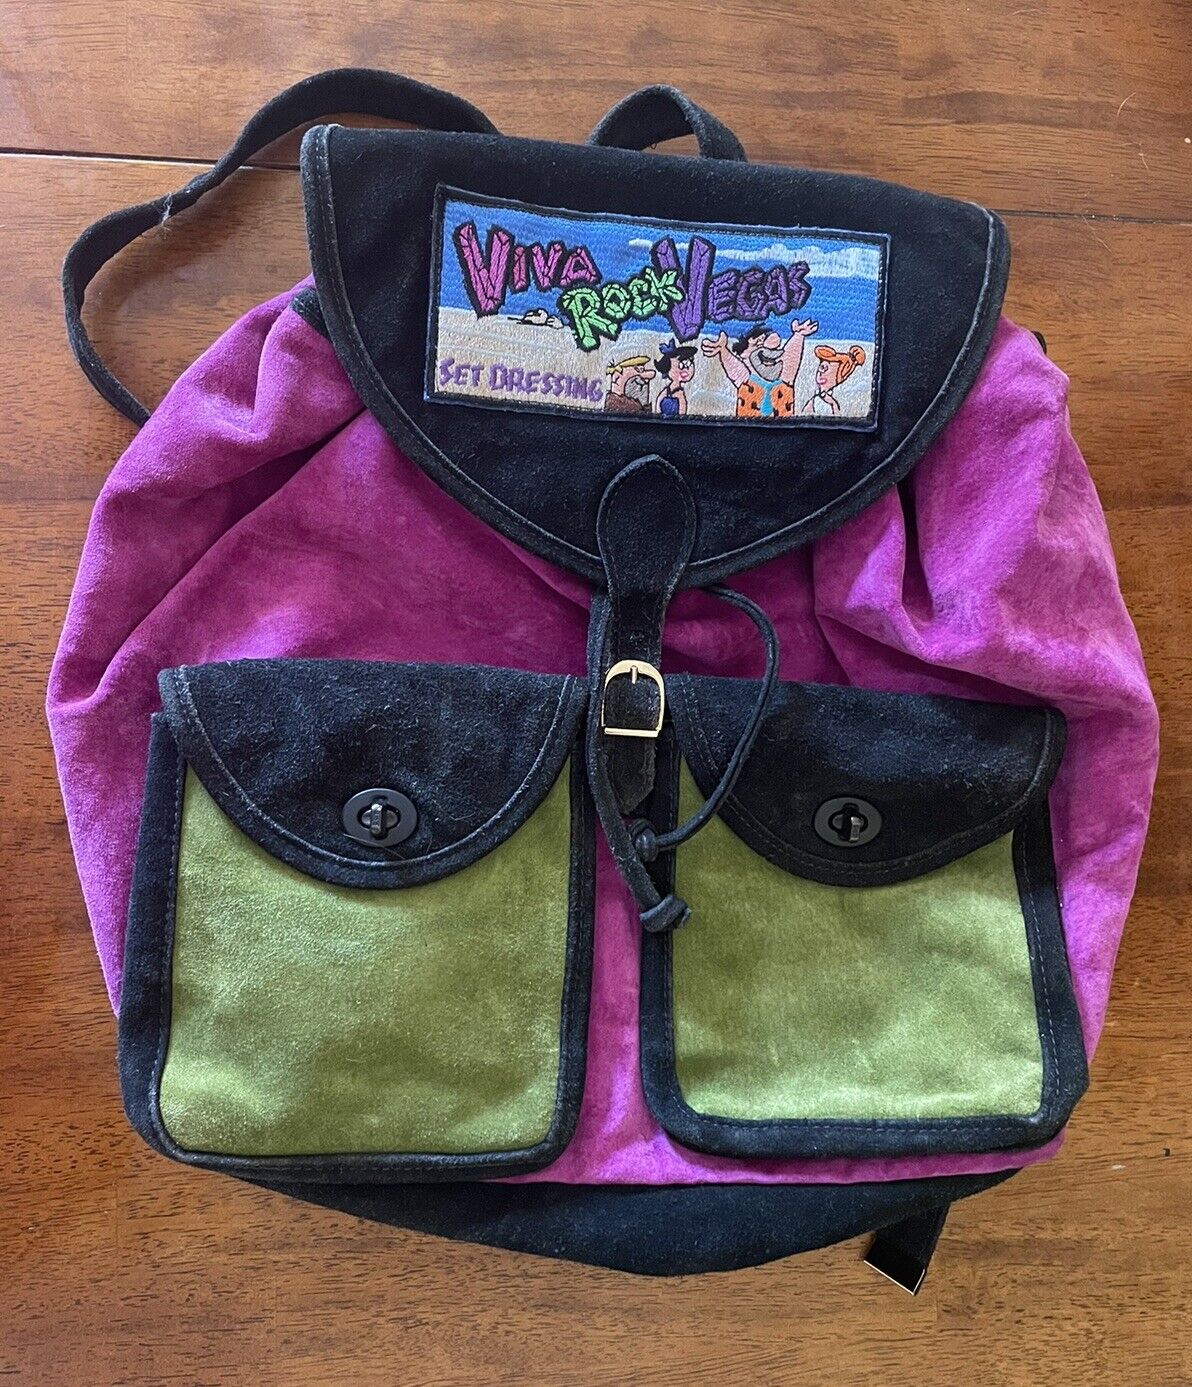 Vintage Suede Viva Rock Vegas The Flintstones Set Designers Gifts Backpack RARE